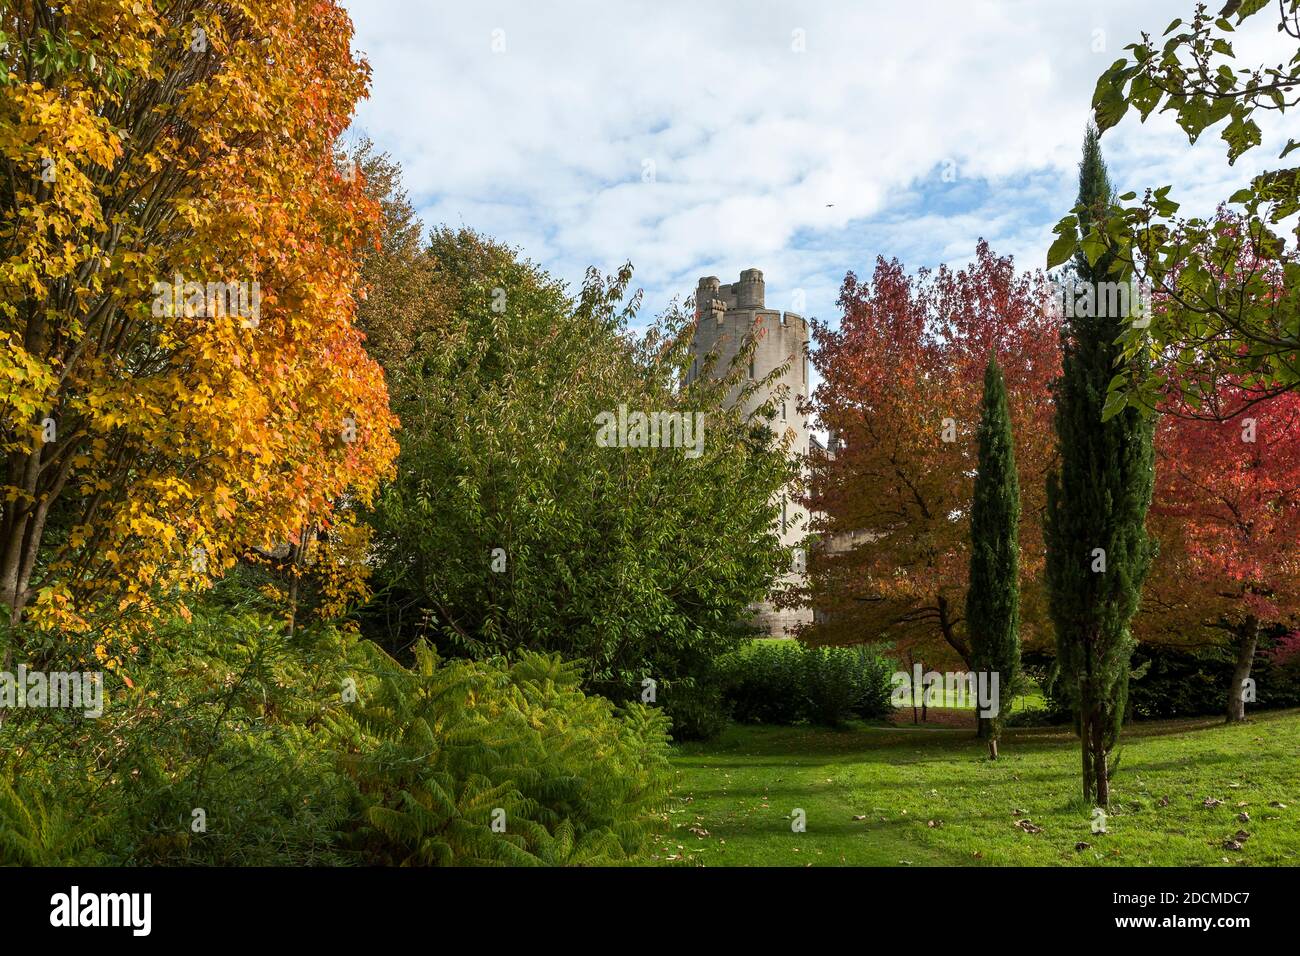 Couleur d'automne dans les jardins du château, Arundel, West Sussex, Angleterre, Royaume-Uni, avec un aperçu de l'une des tours du château d'Arundel Banque D'Images